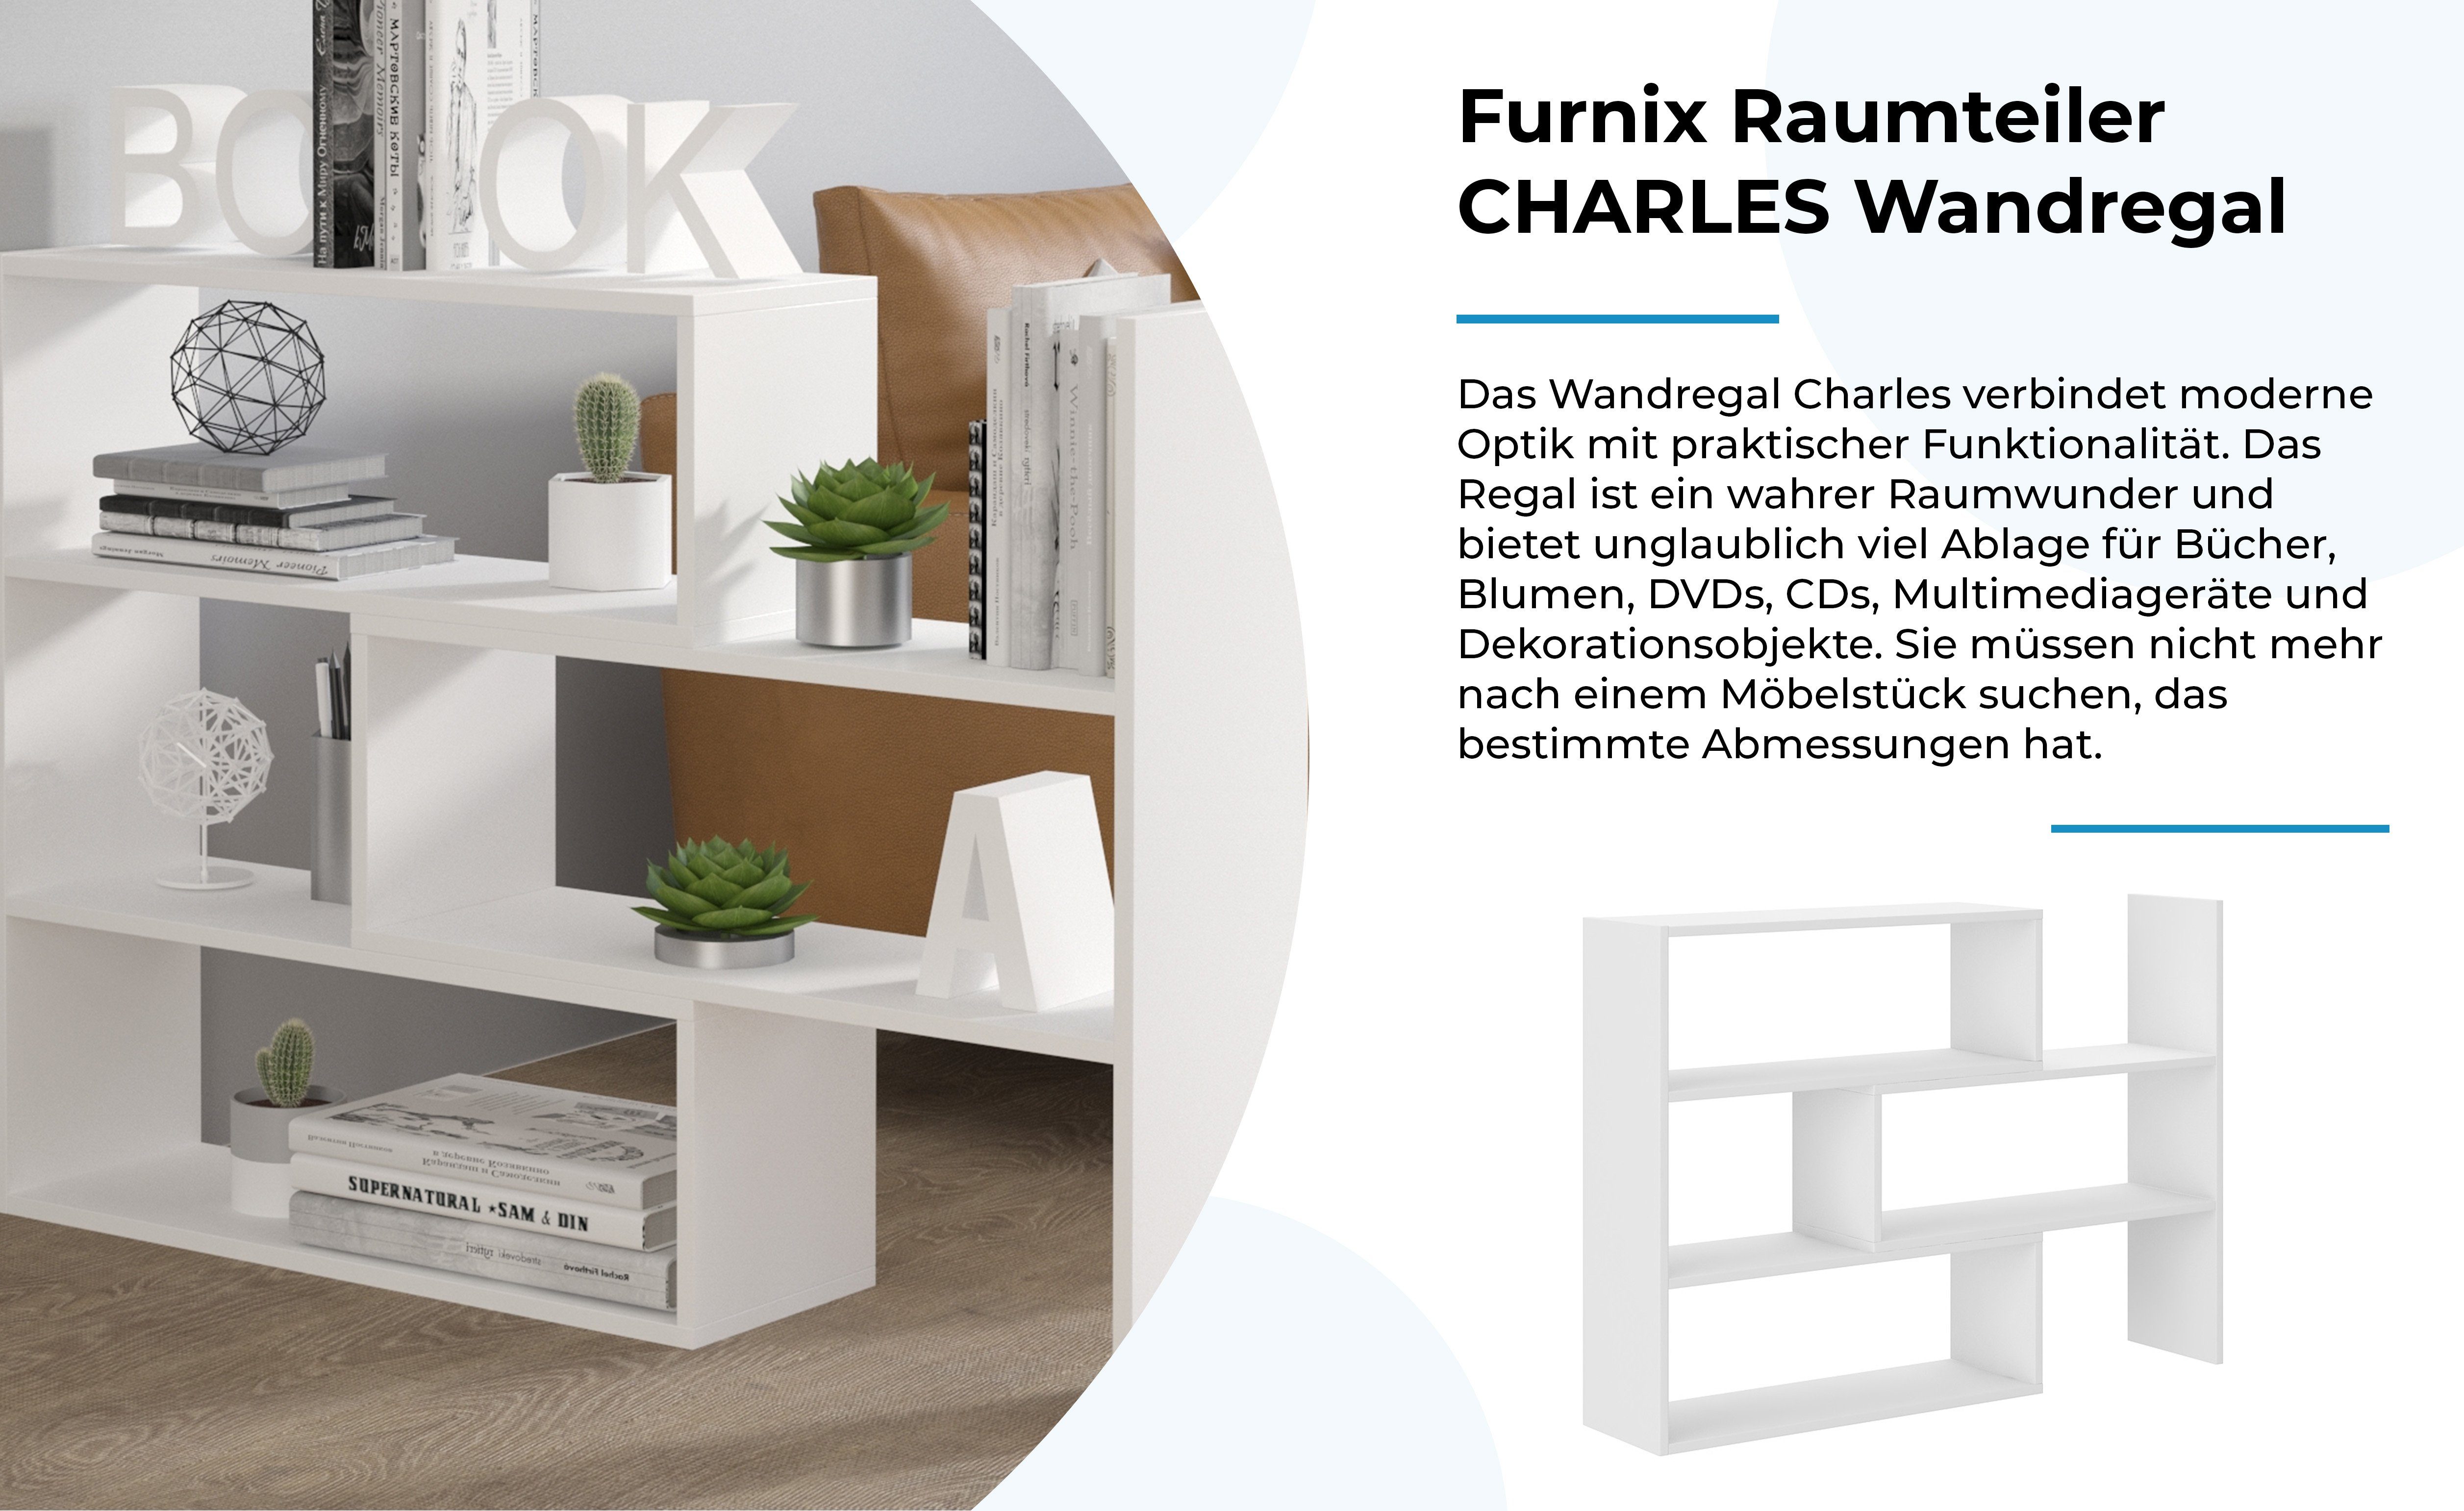 Bücherregal Weiß Wandregal Raumteiler ausziehbar Furnix 3 Auswahl, Farben CHARLES je 3 in Varianten